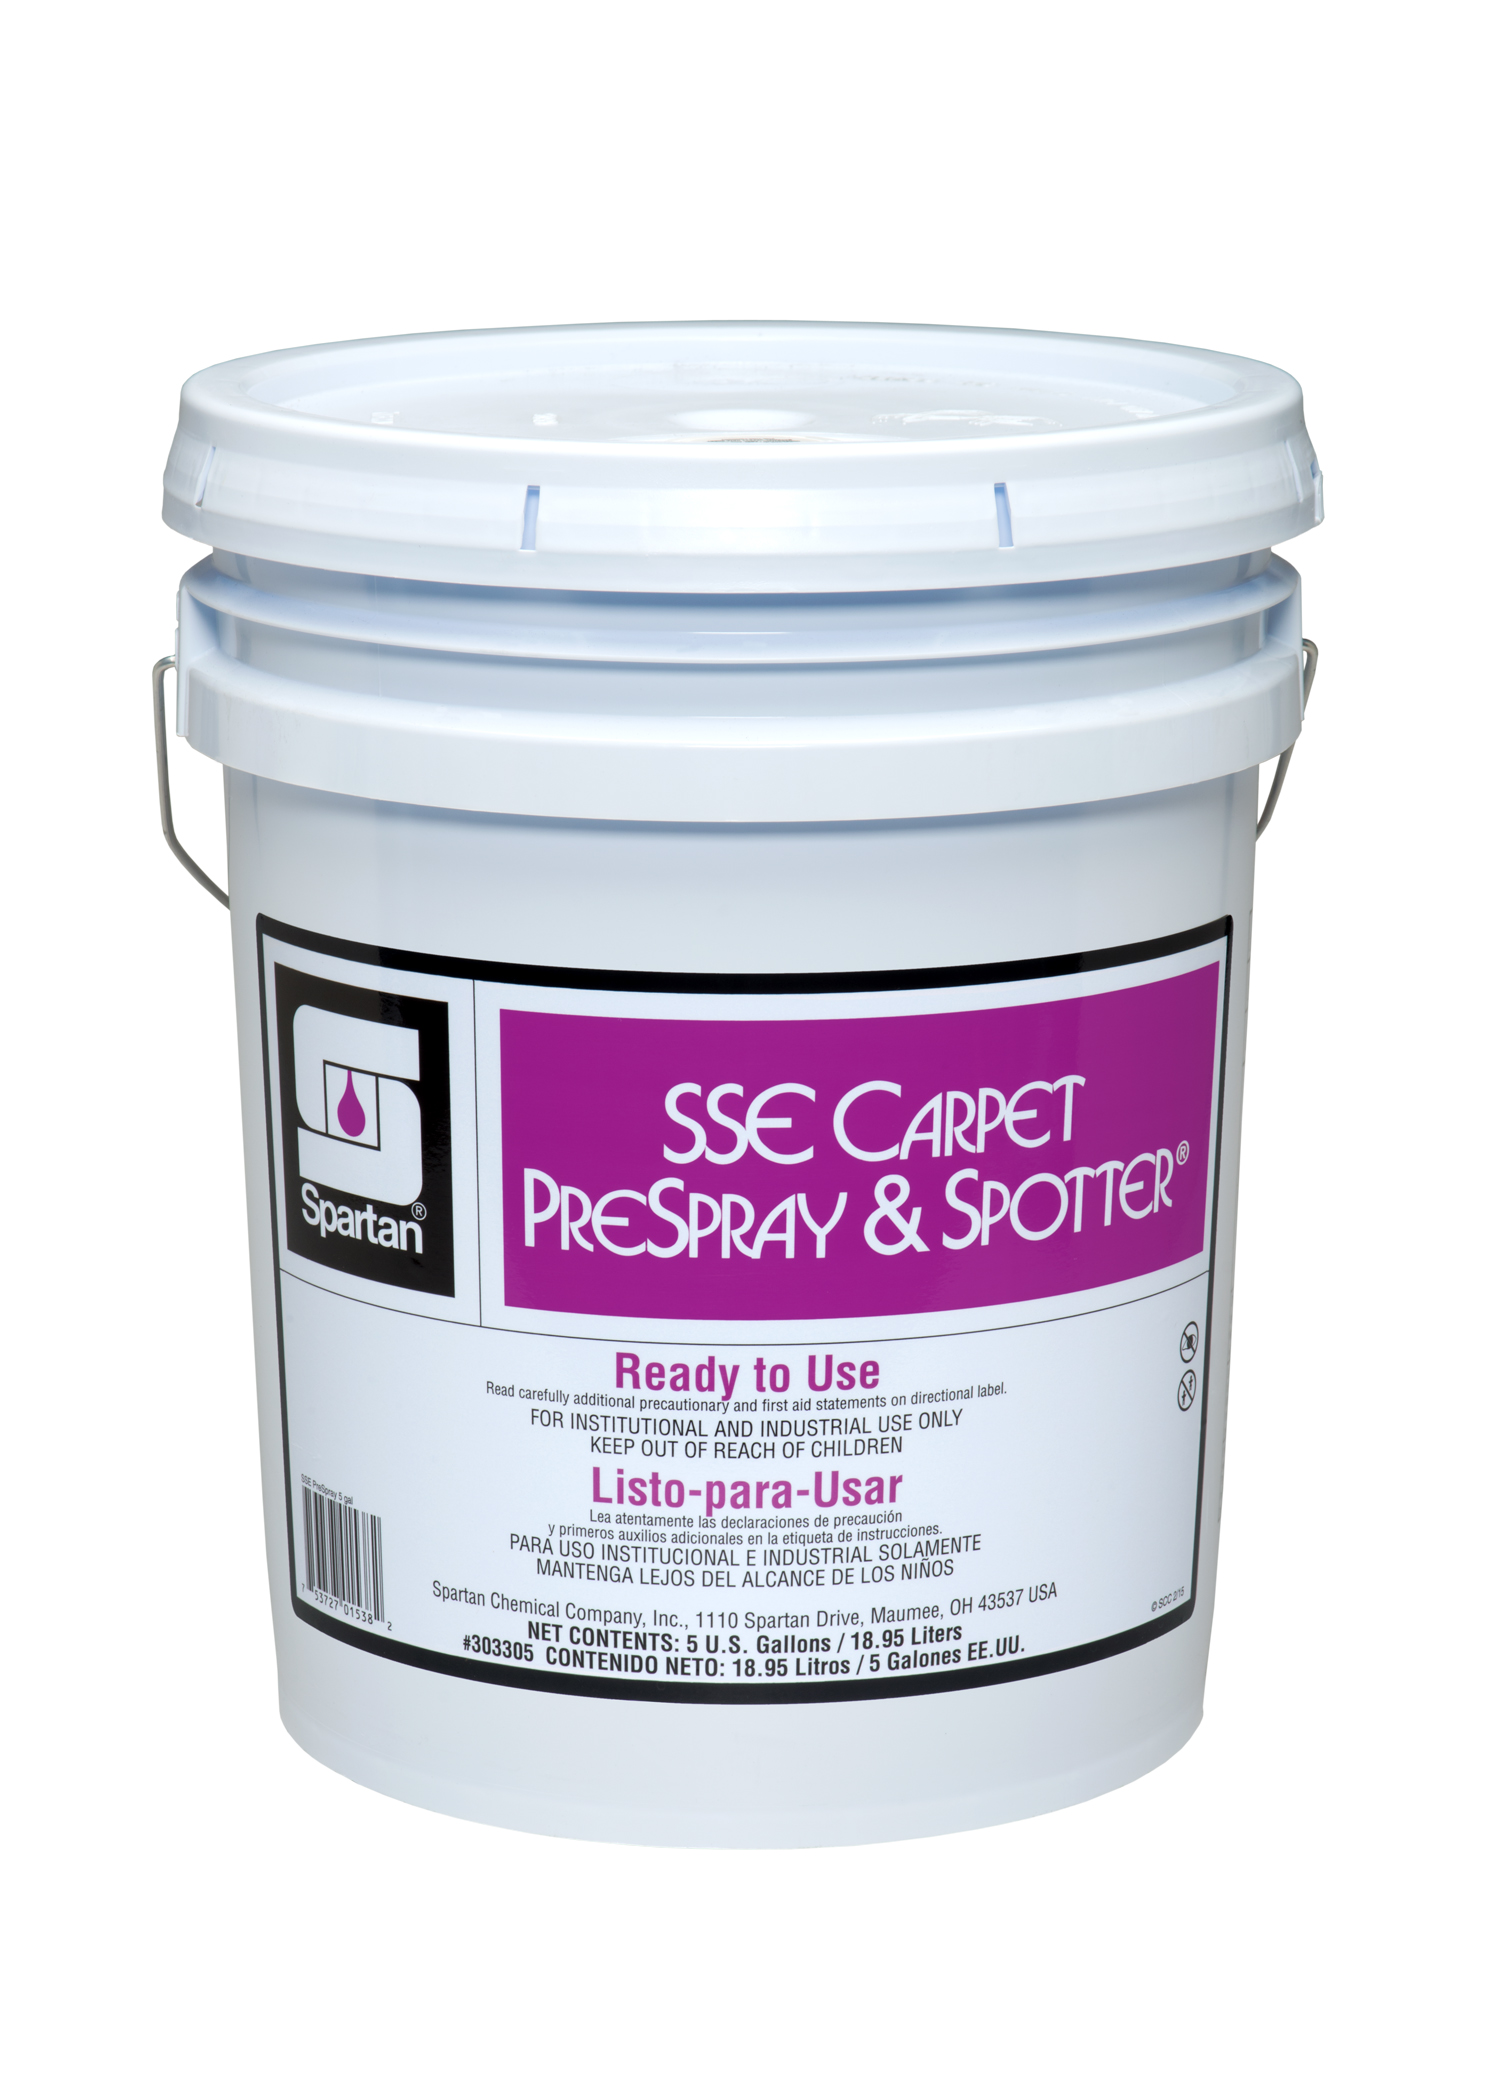 SSE Carpet Prespray & Spotter® 5 gallon pail